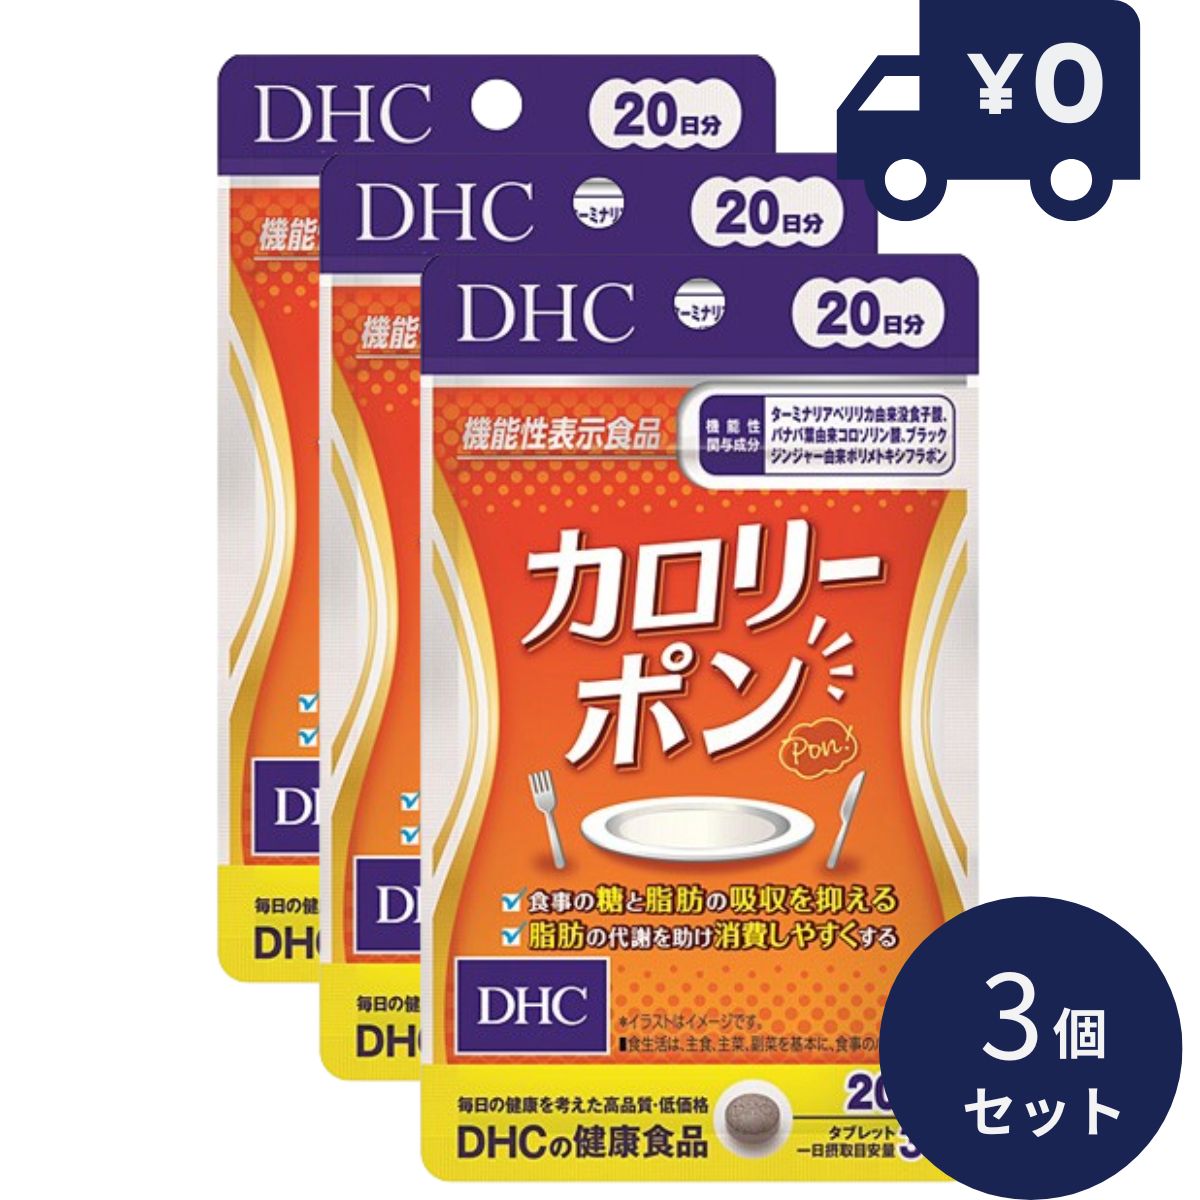 DHC サプリメント カロリーポン 20日分 (60粒入) 3個セット ディーエイチシー サプリメント 健康食品 粒タイプ 人気 サプリ